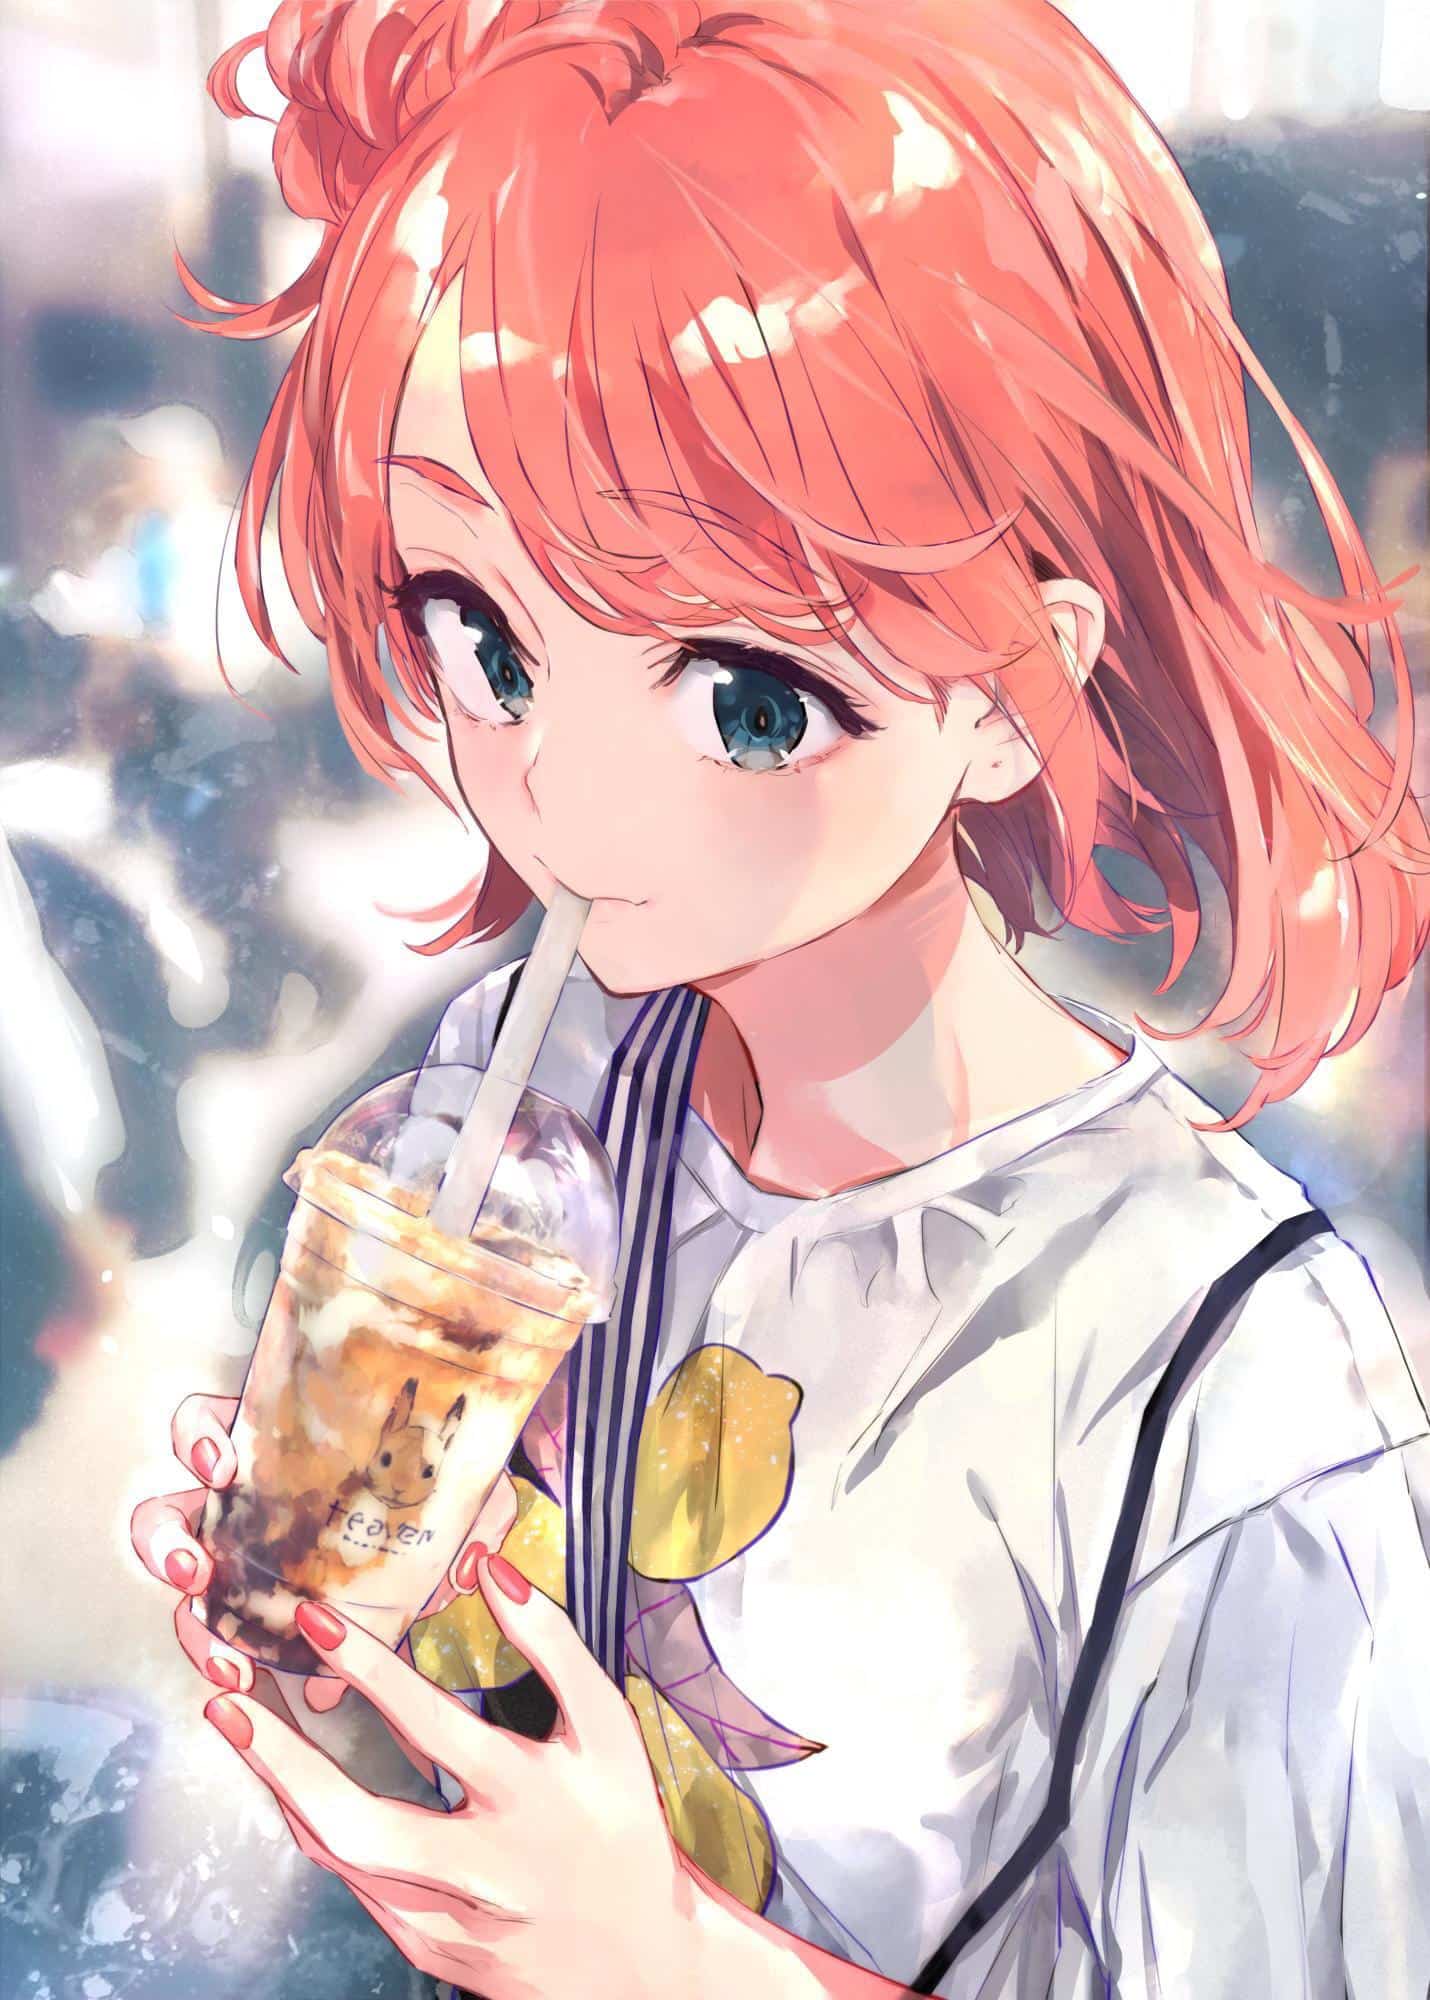 Trà sữa và anime đã trở thành một cặp đôi hoàn hảo cho những ai yêu thích cả hai thể loại này. Với nhiều loại trà sữa độc đáo và hình ảnh của các nhân vật anime bắt mắt, bạn sẽ có trải nghiệm thú vị khi hòa mình vào thế giới đầy màu sắc này.